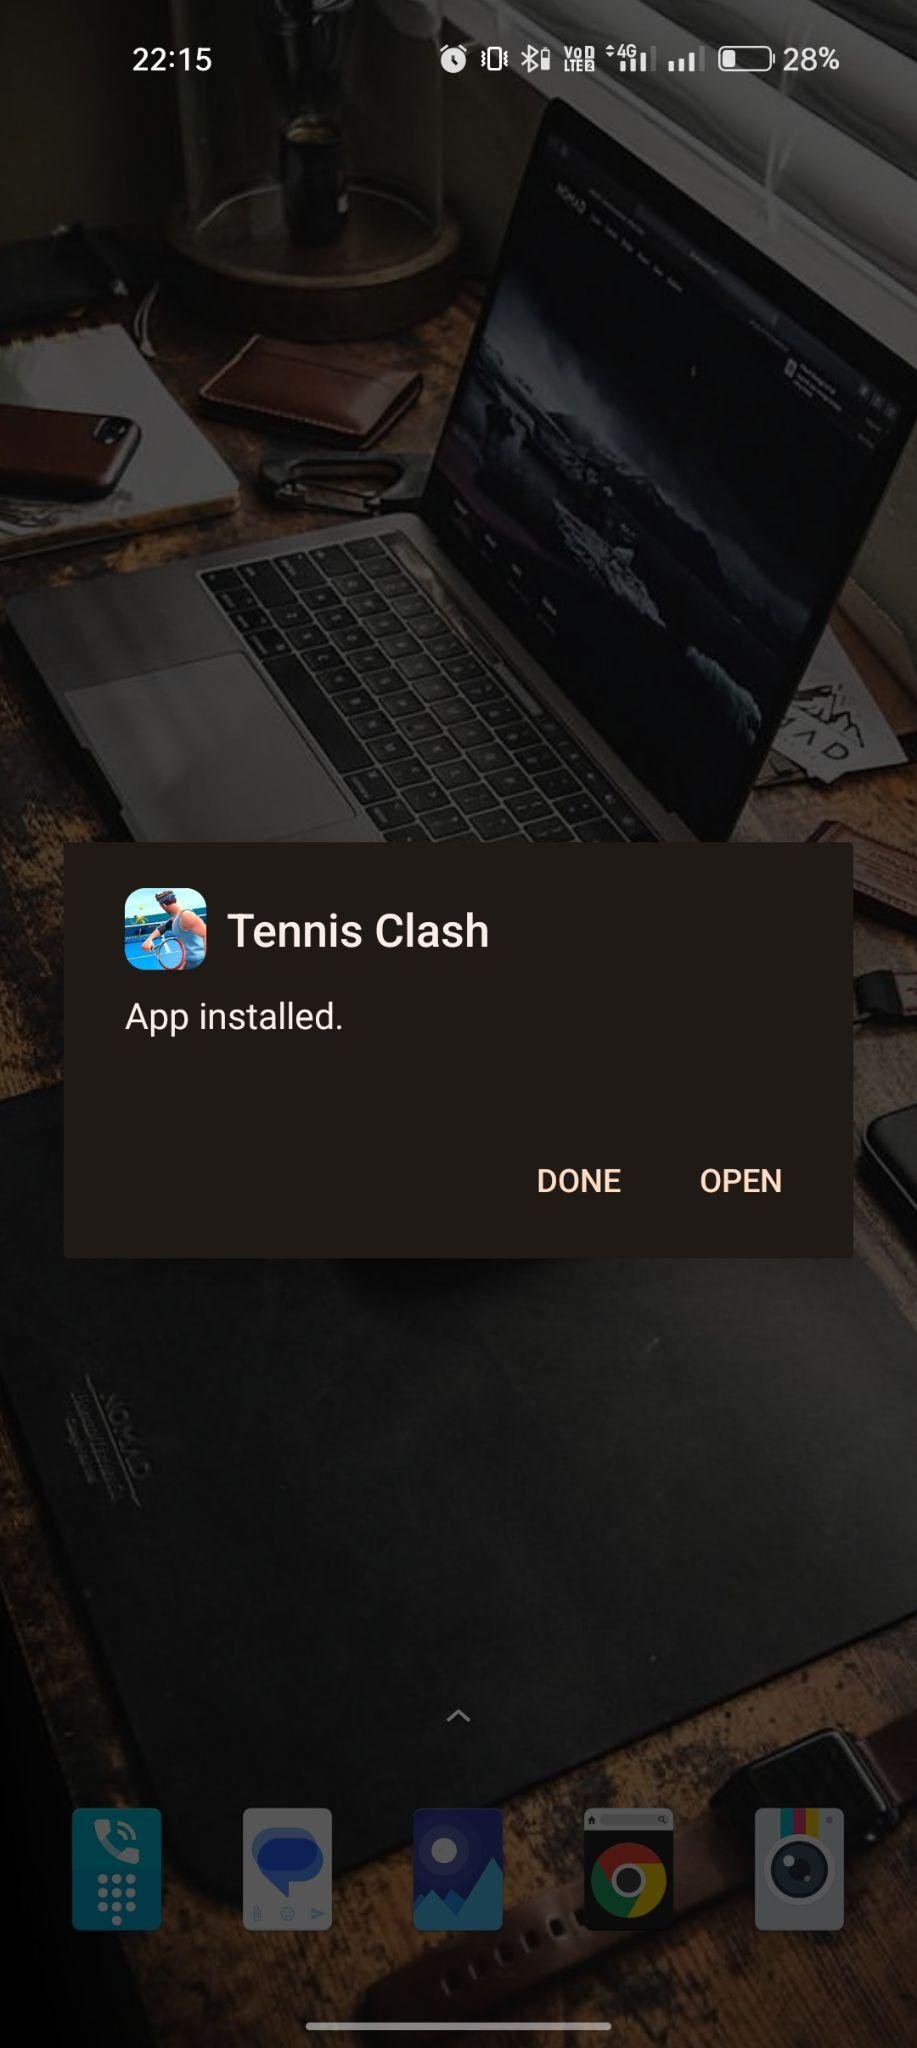 Tennis Clash apk installed